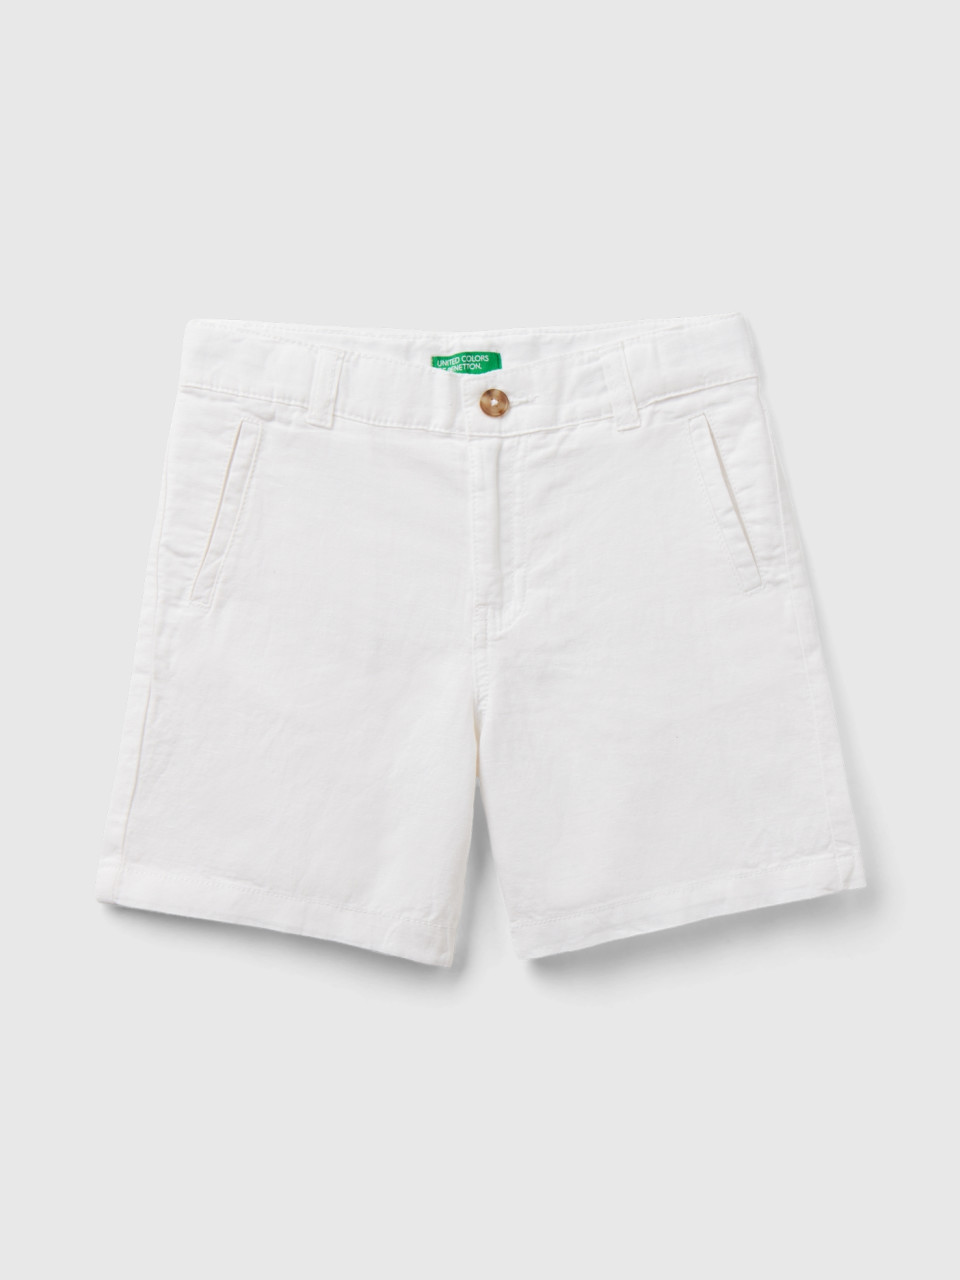 Benetton, Shorts In Linen Blend, White, Kids